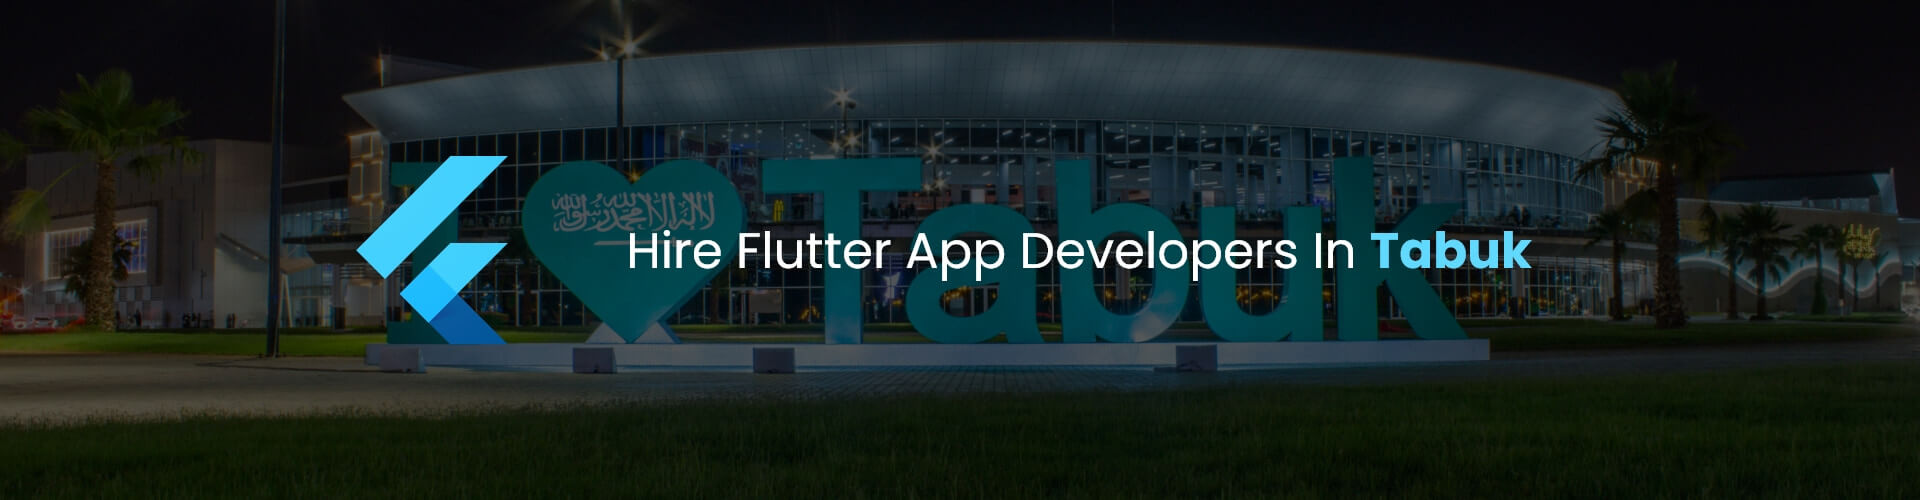 hire flutter app developers in tabuk